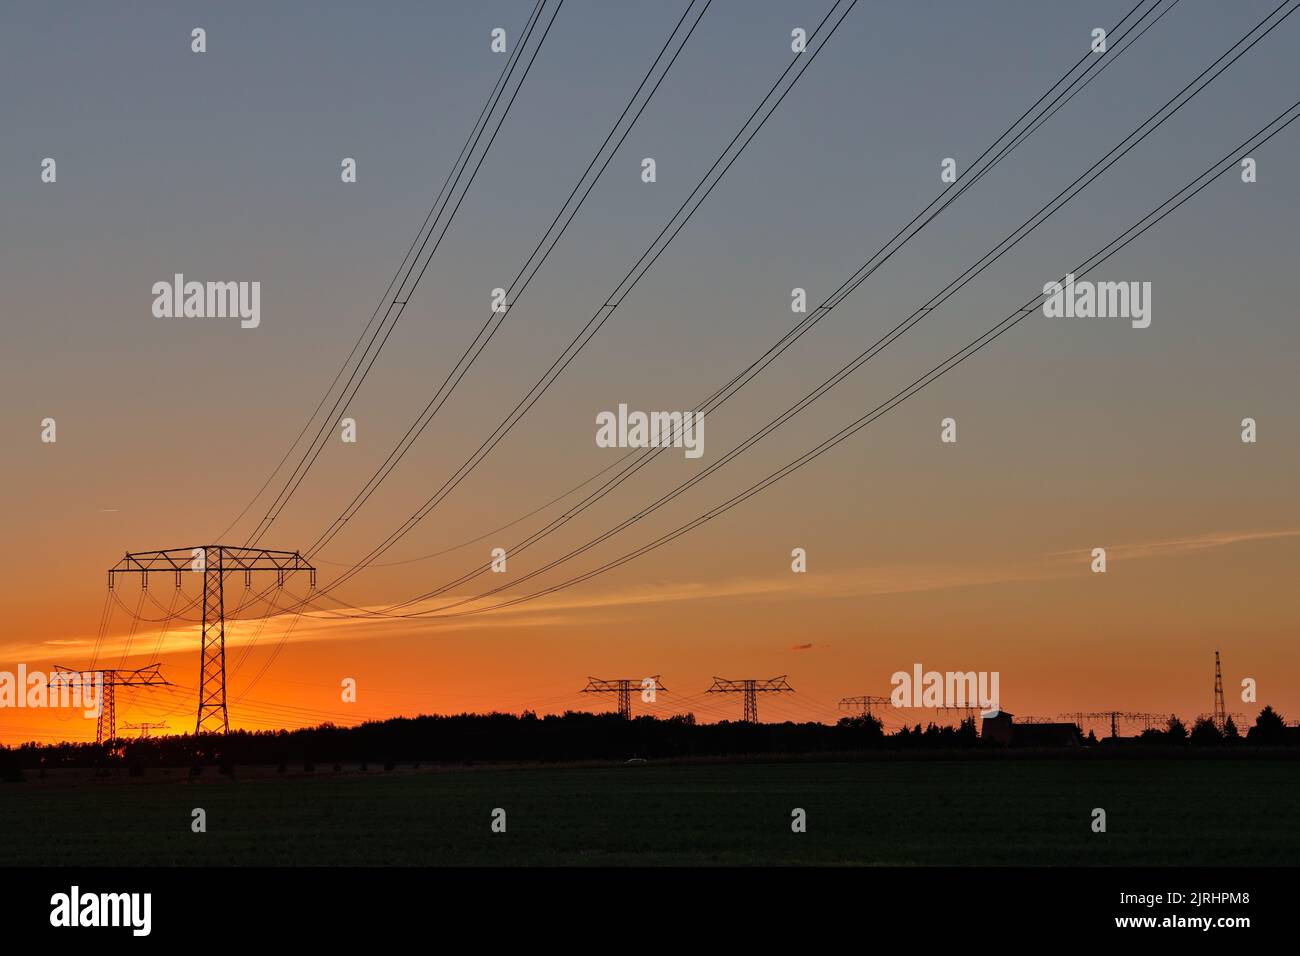 Freileitungstrasse im Sonnenuntergang Übertragung Energie Foto de stock